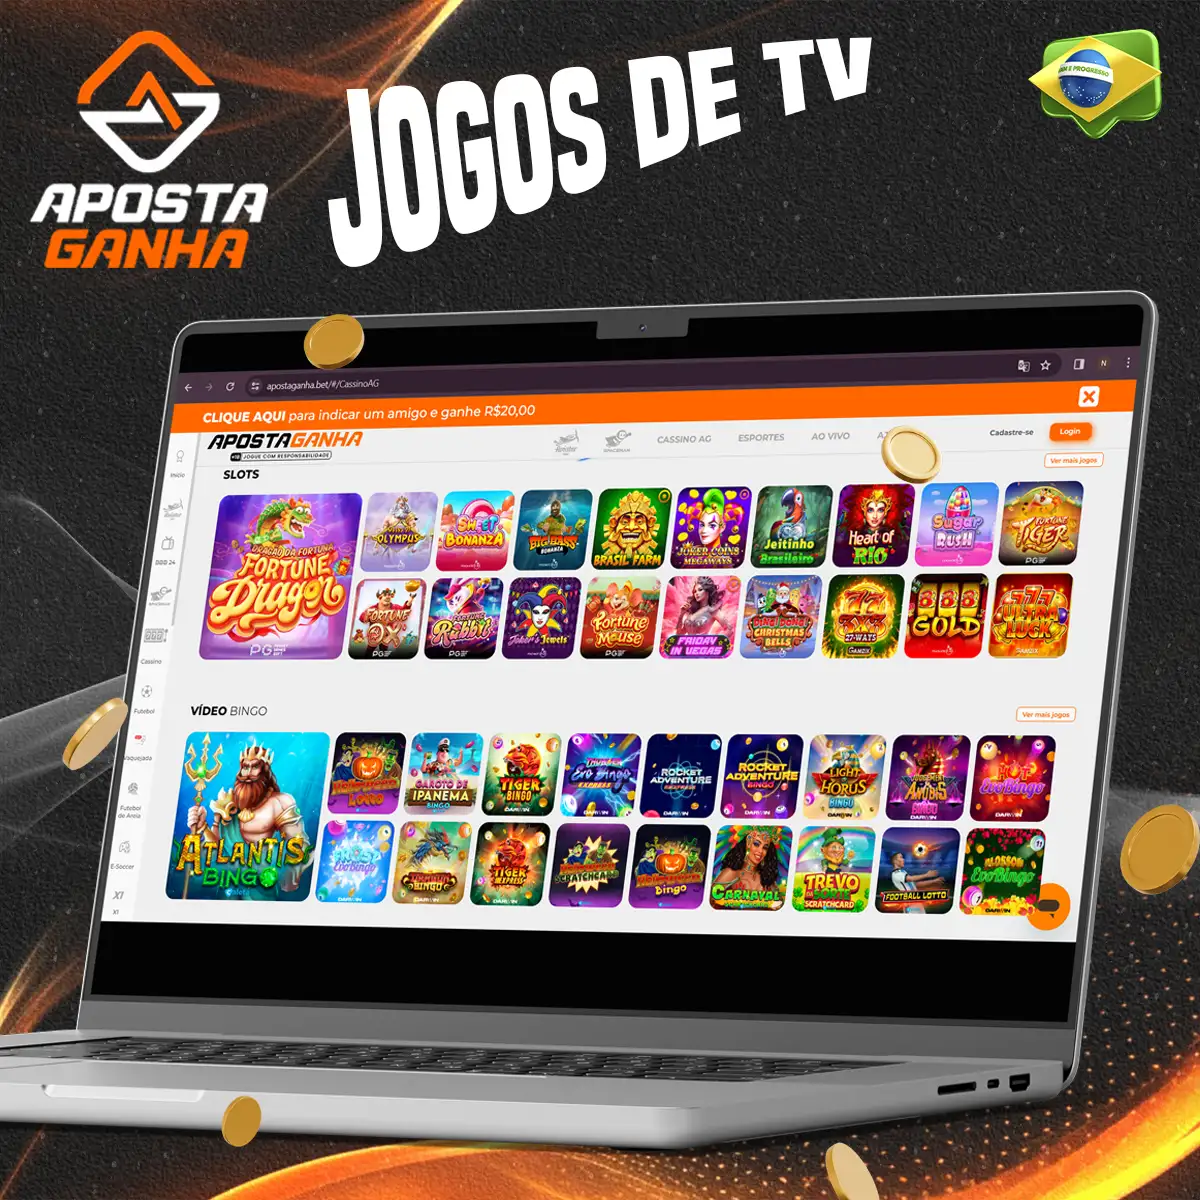 Jogos televisionados no Casino Aposta Ganha no Brasil